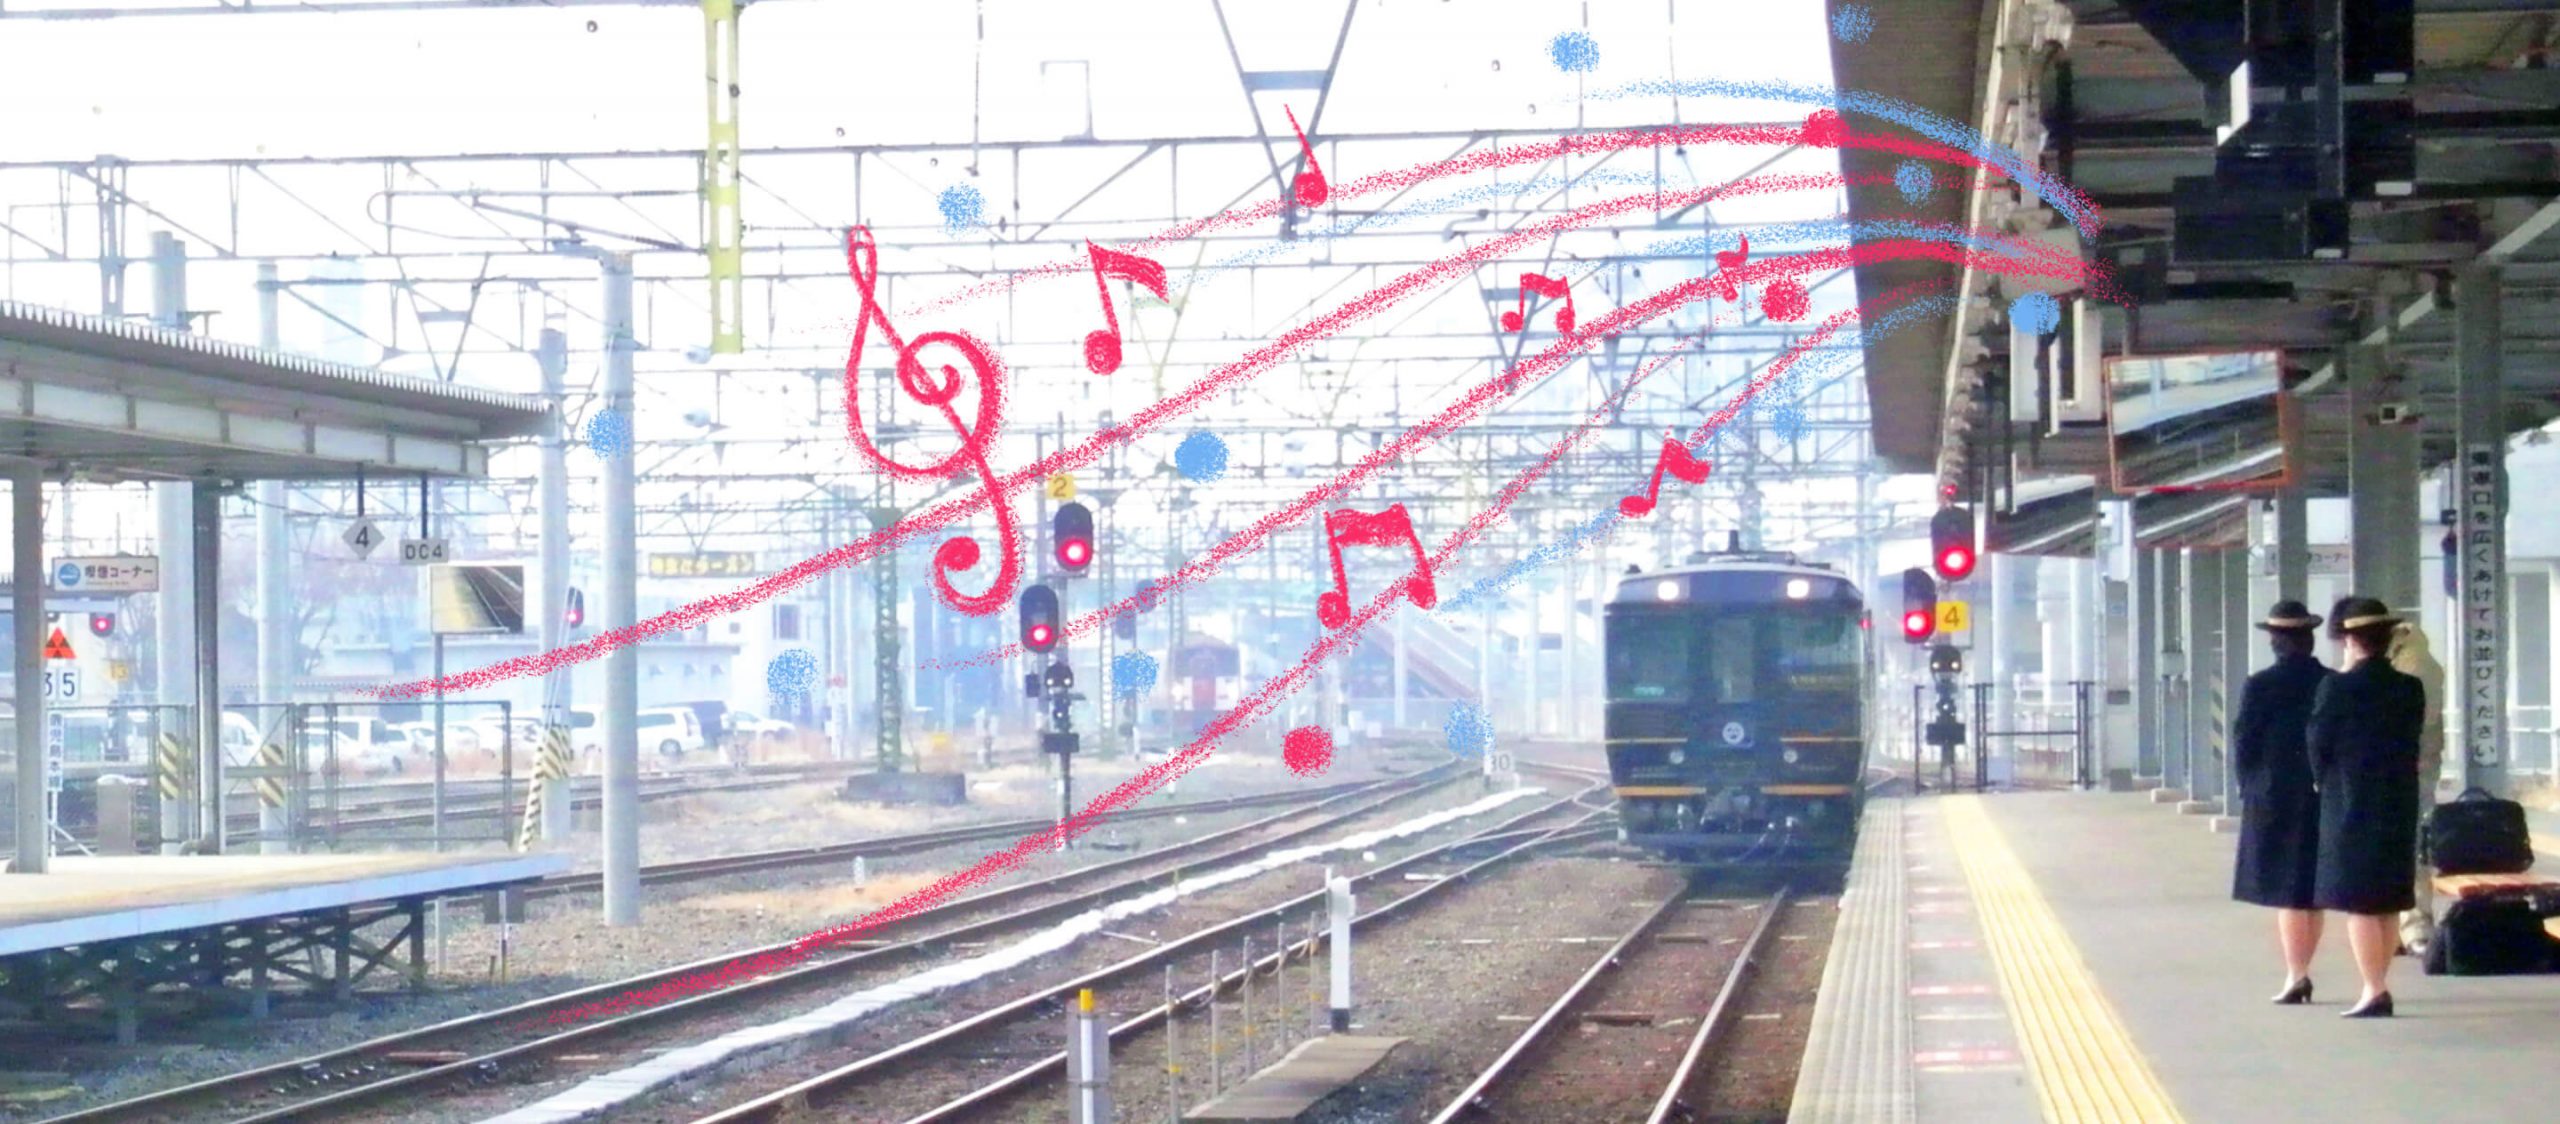 เสียงเพลง วัฒนธรรม และเรื่องราวเบื้องหลังเพลงประจำสถานีรถไฟในญี่ปุ่น